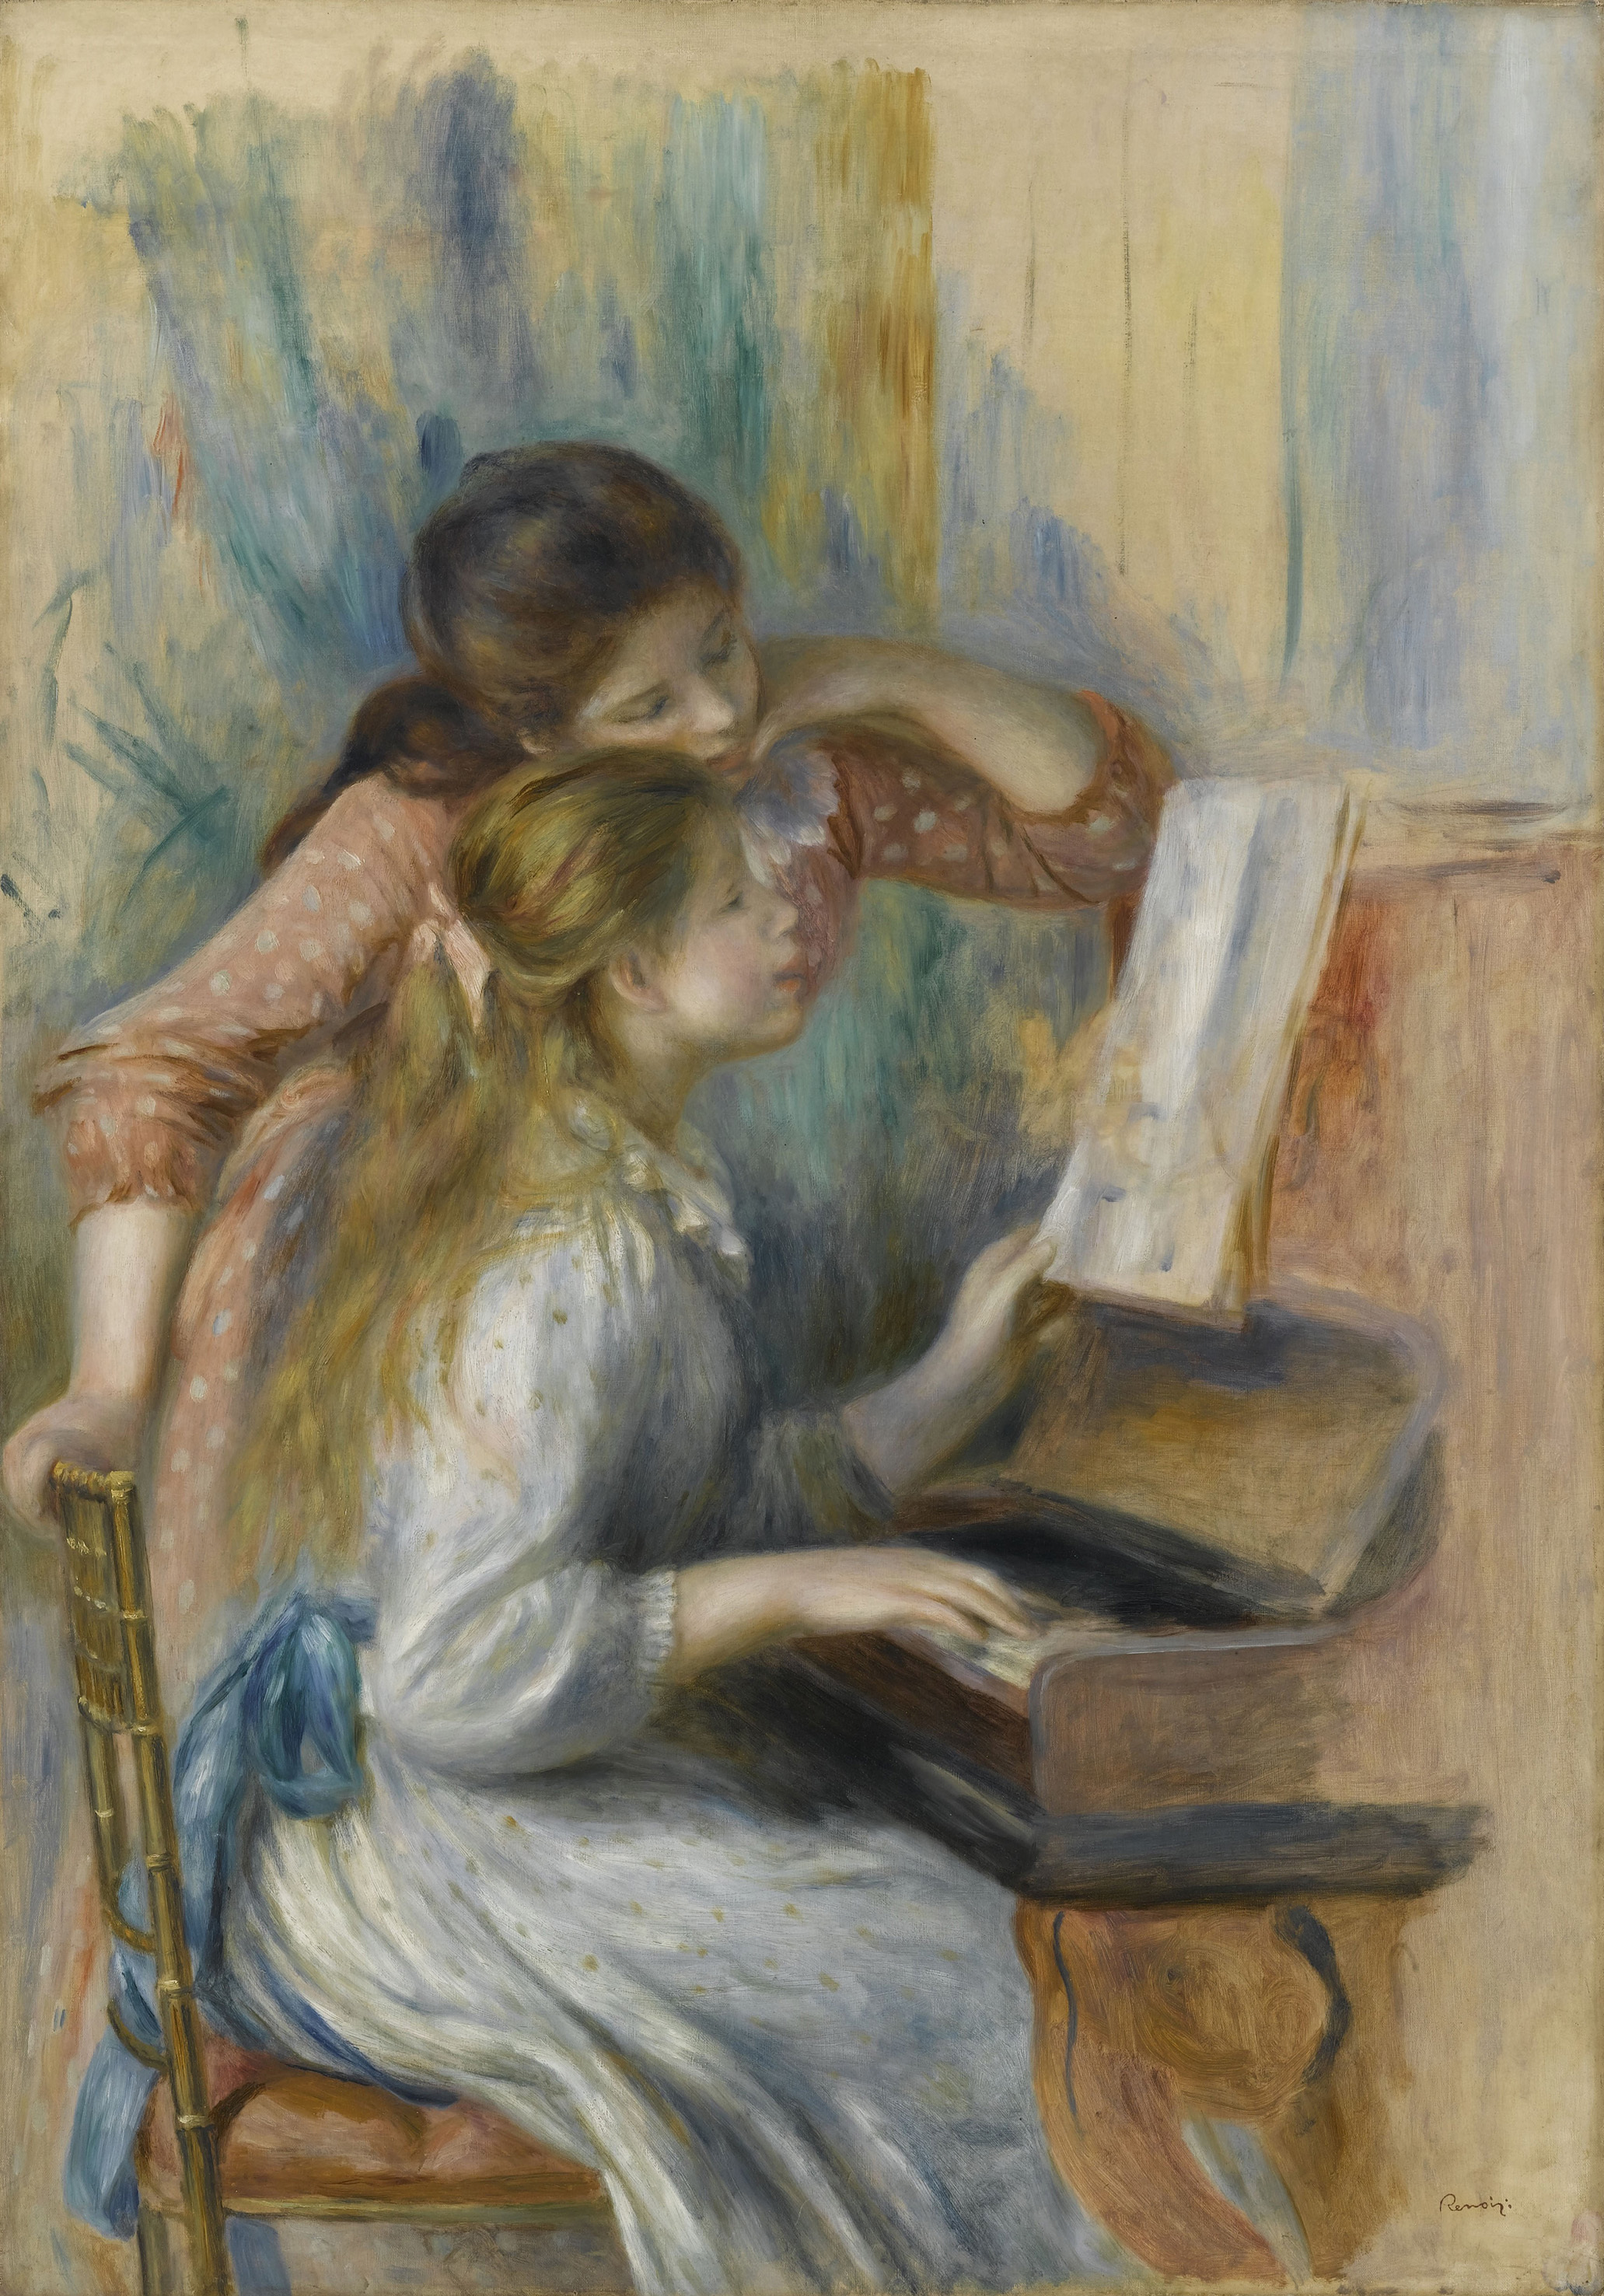 オーギュスト・ルノワール《ピアノを弾く少女たち》1892年頃、油彩・カンヴァス、116×81cm、オランジュリー美術館　 (C) RMN-Grand Palais (musée de l'Orangerie) / Franck Raux